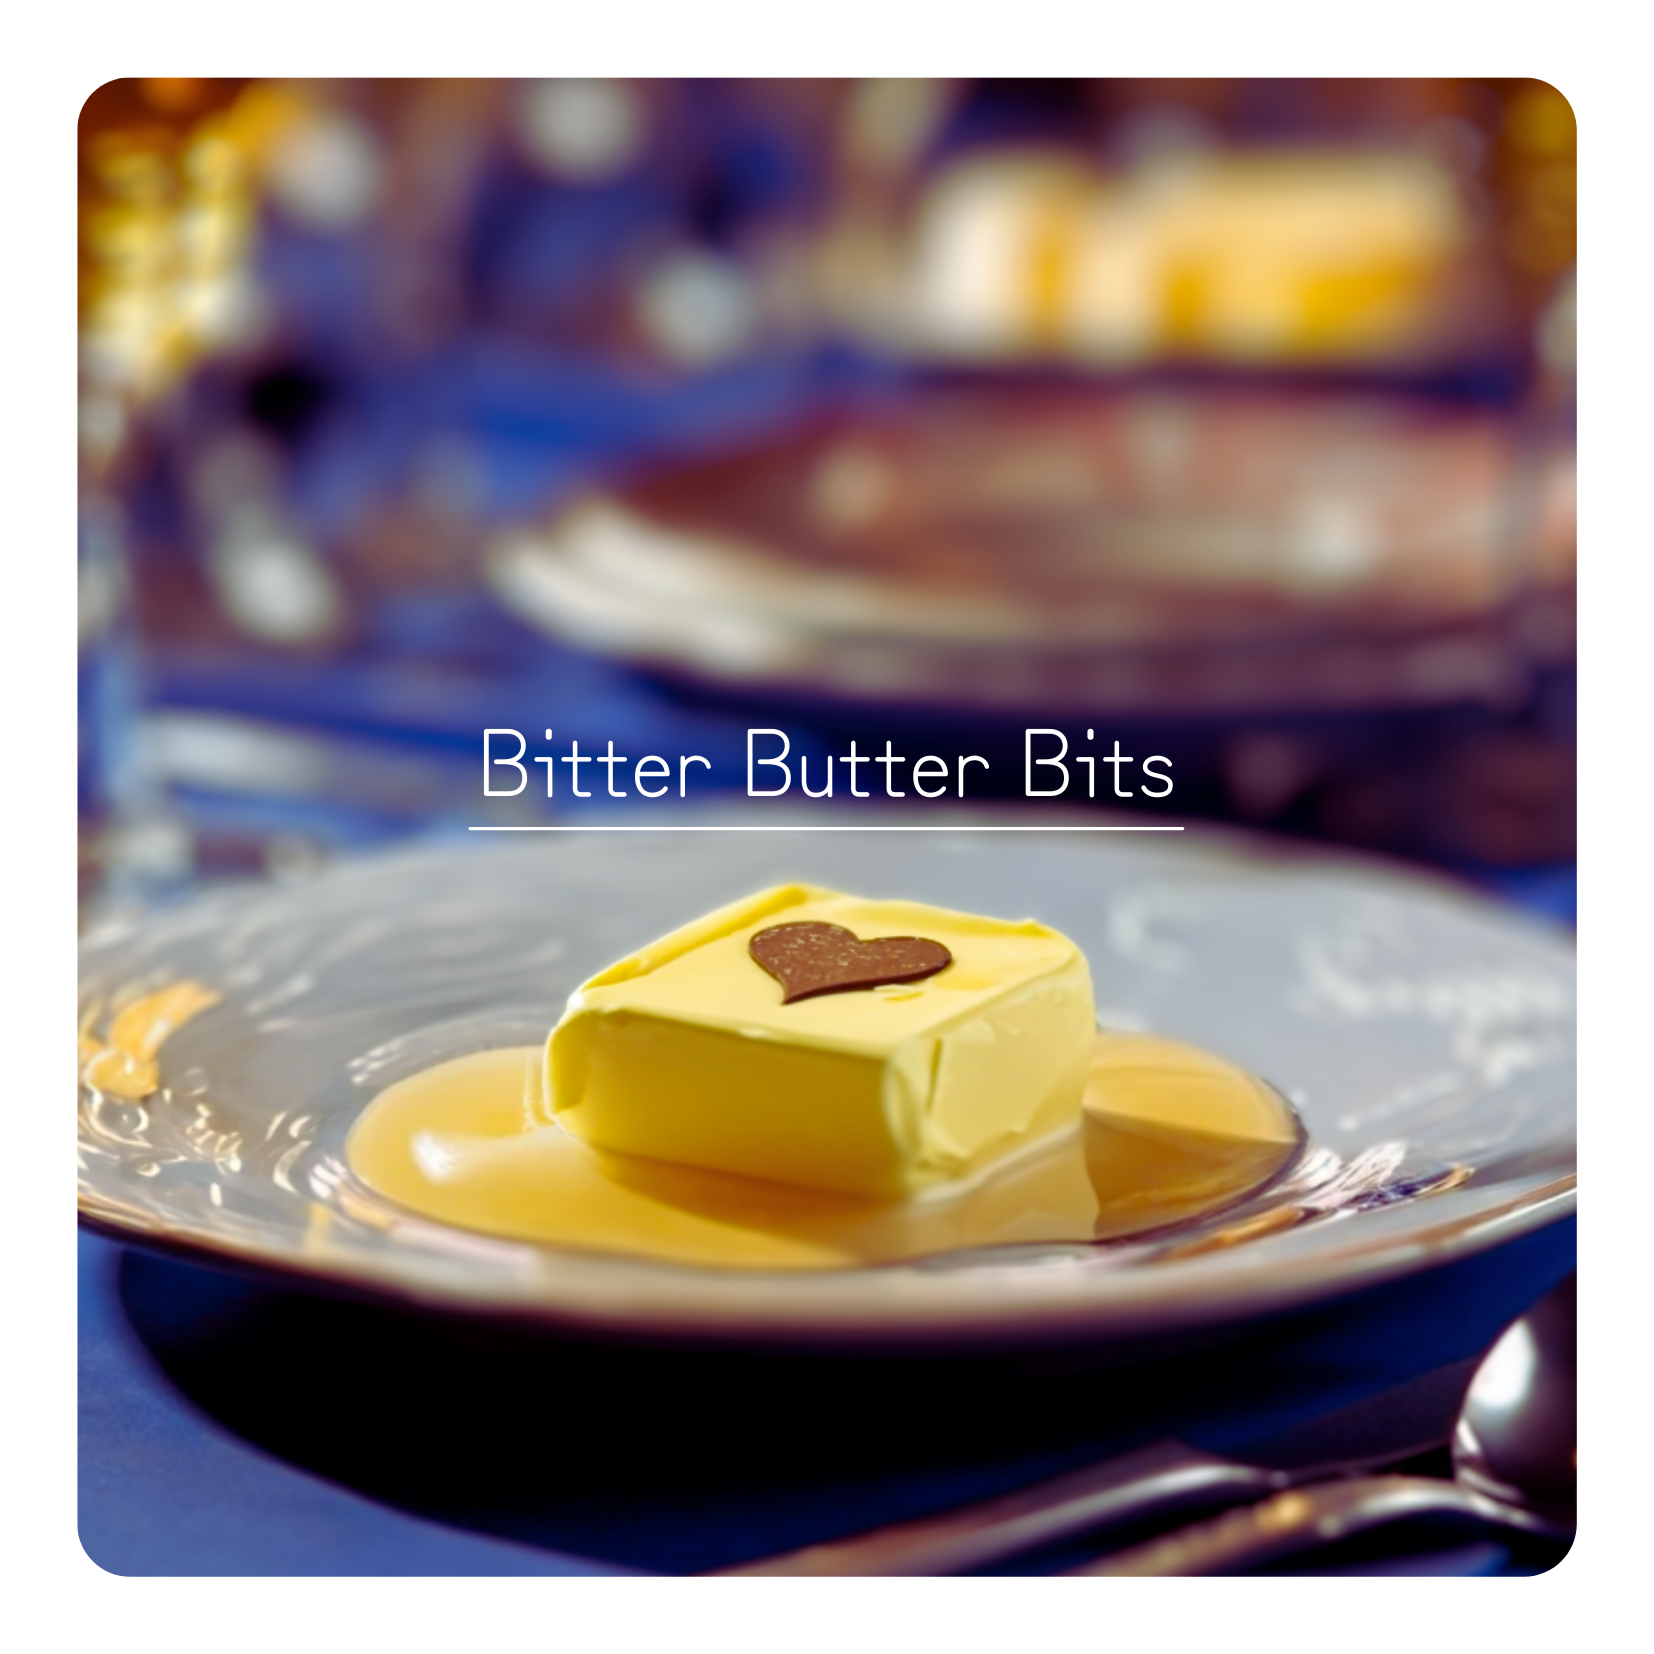 Bitter Butter Bits